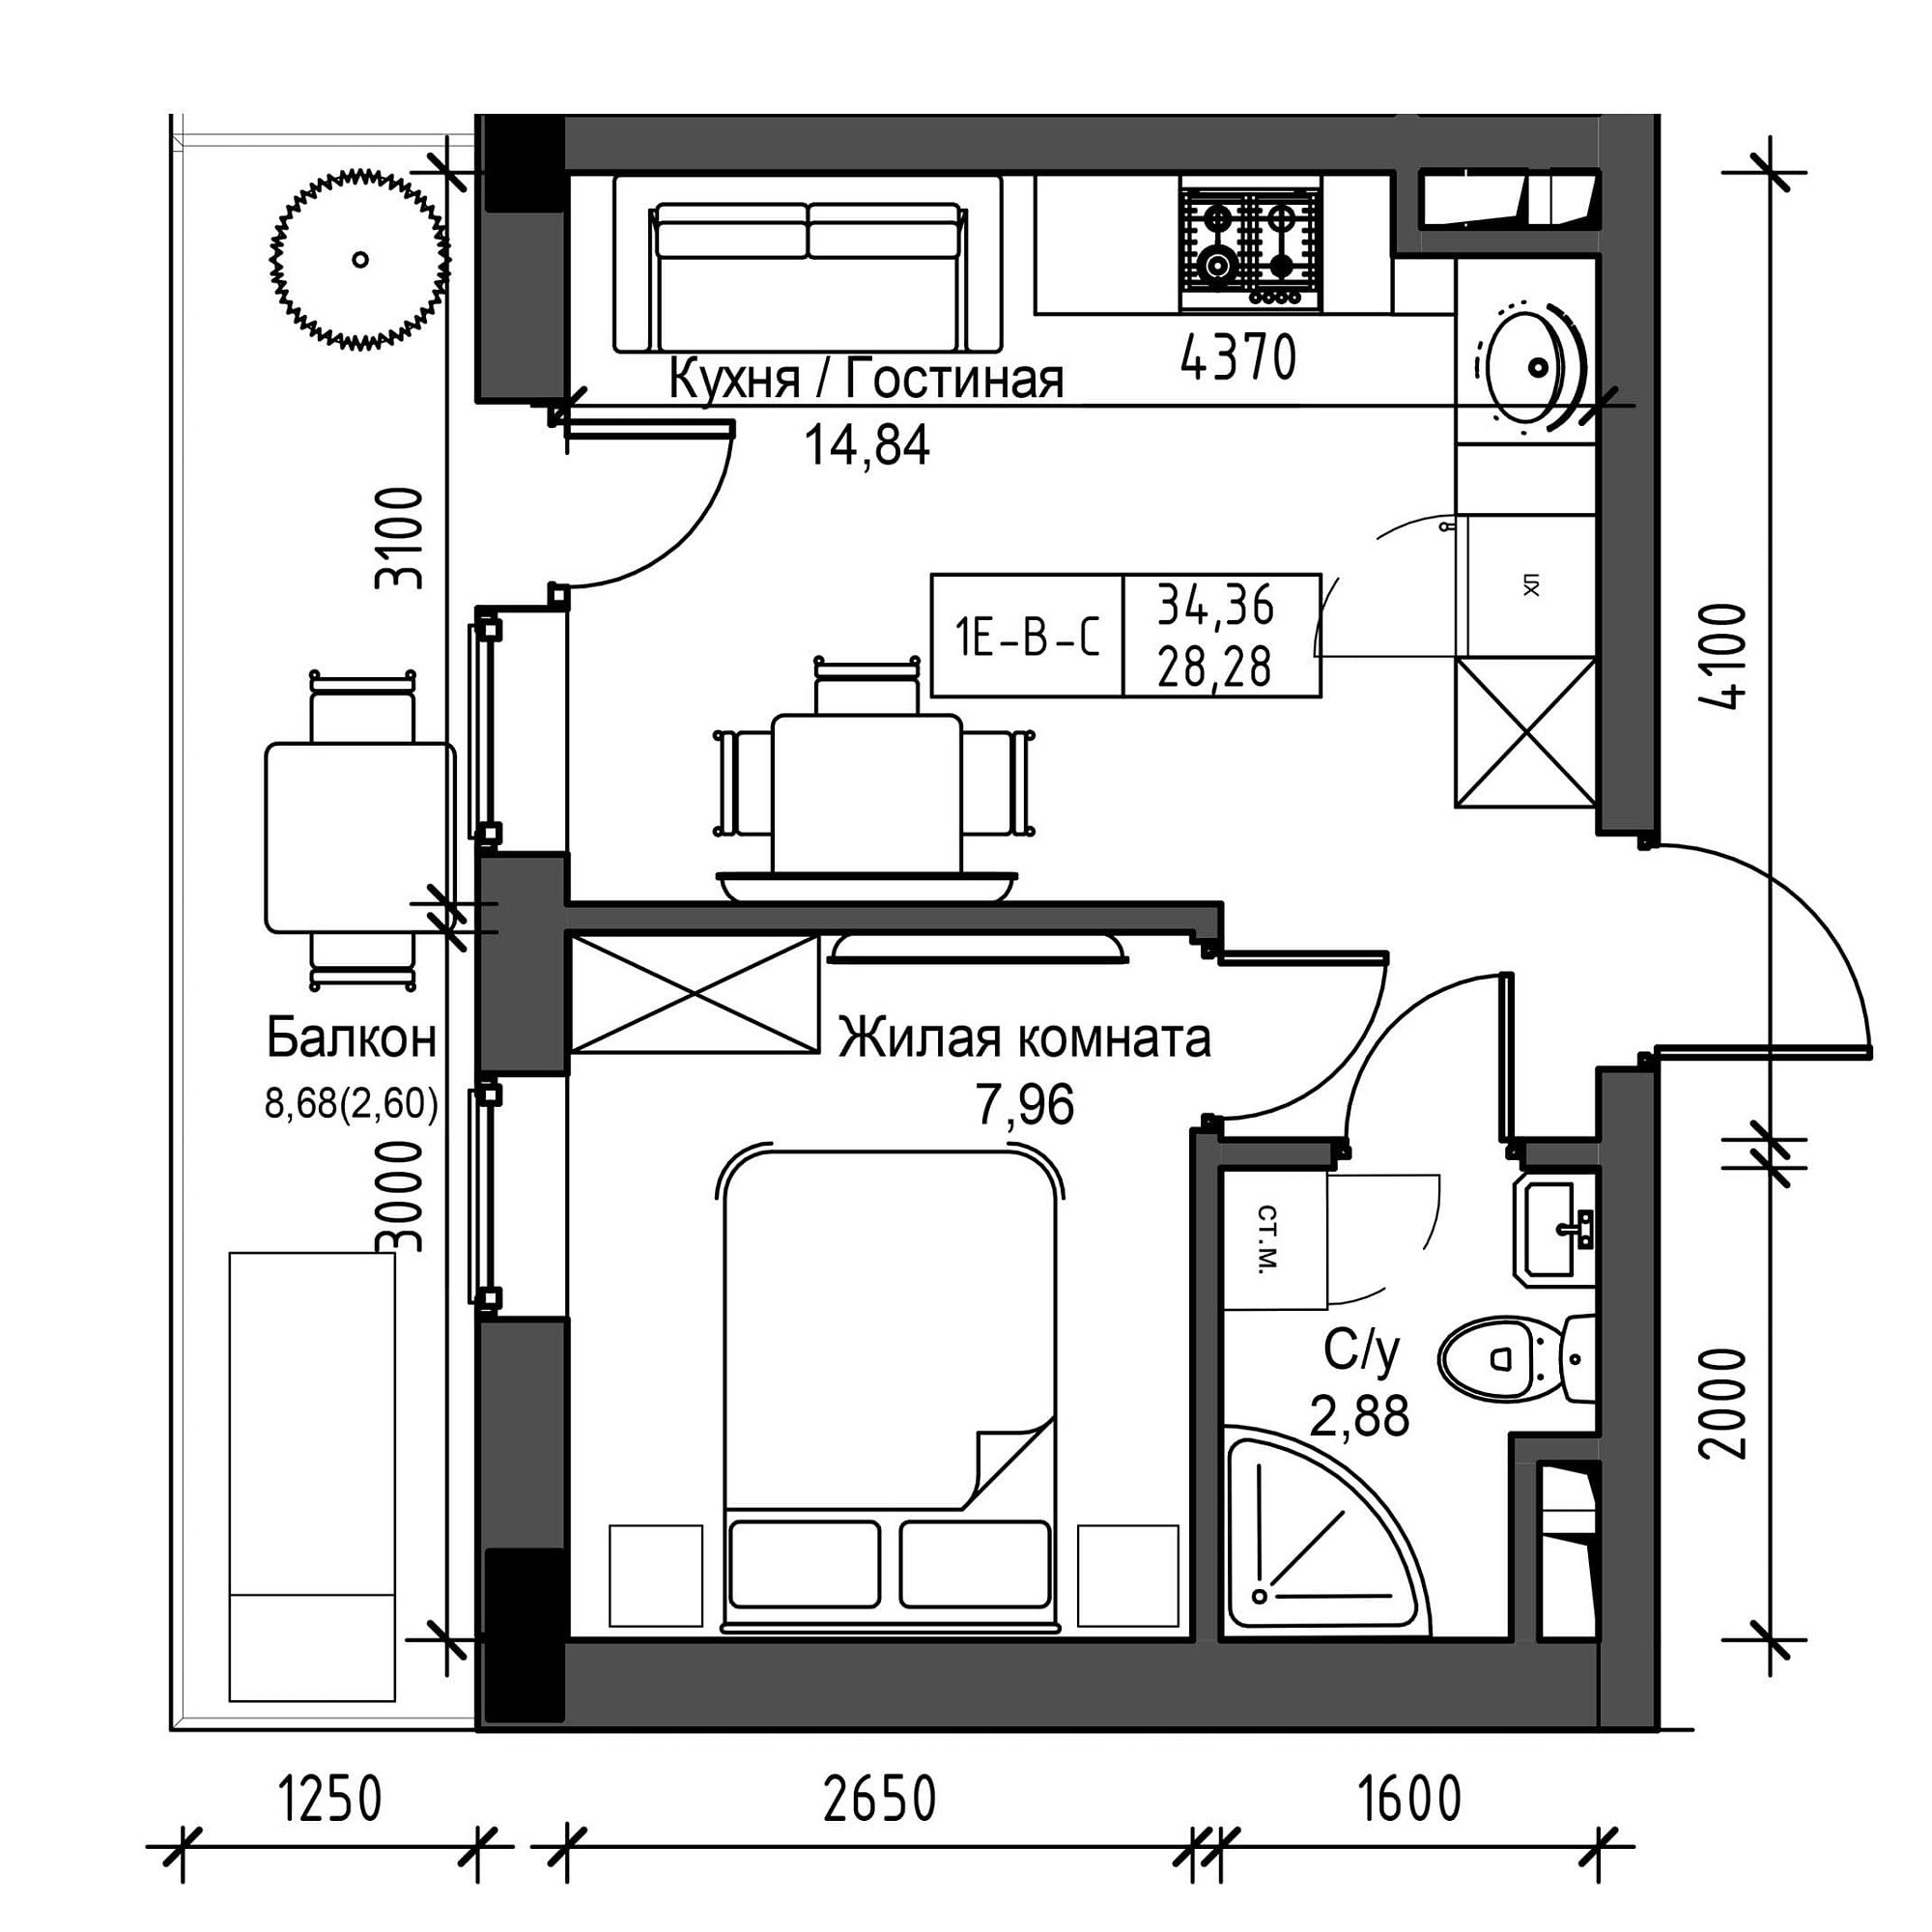 Планировка 1-к квартира площей 28.28м2, UM-001-05/0014.